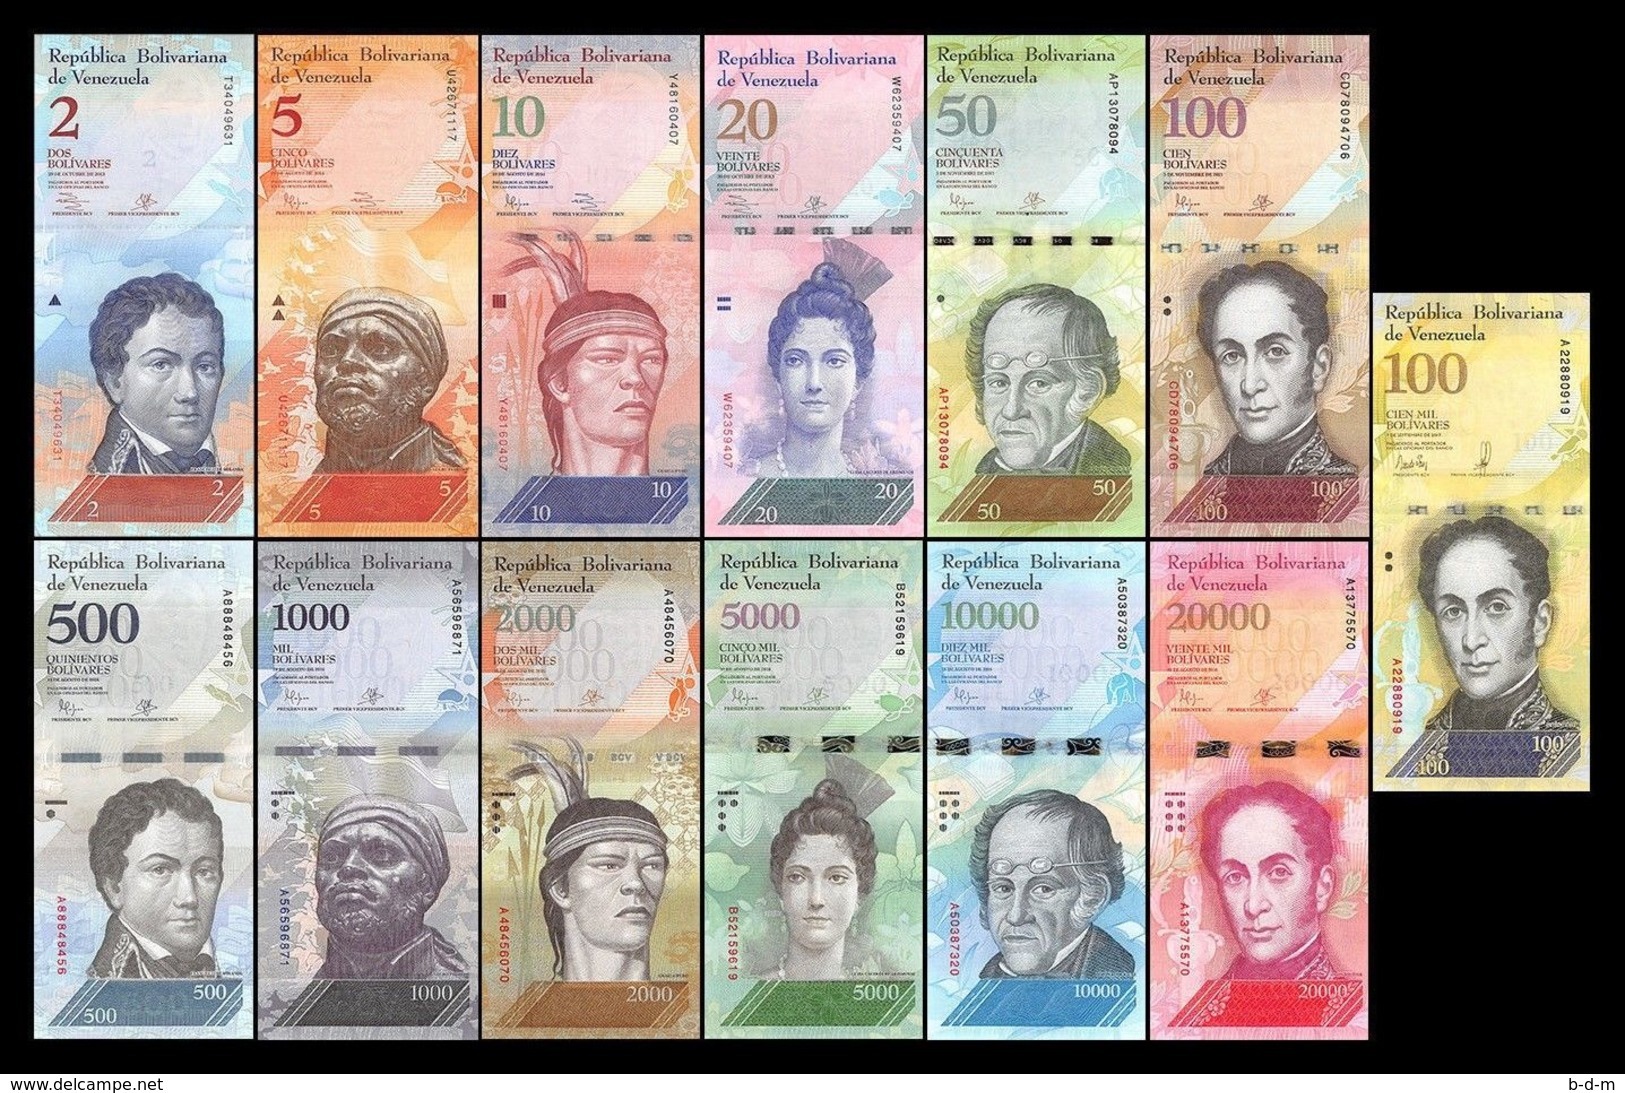 Venezuela Full Set 2 5 10 20 50 100 500 1000 2000 5000 10000 20000 100000 Bolívares 2007-2017 Pick New SC UNC - Venezuela